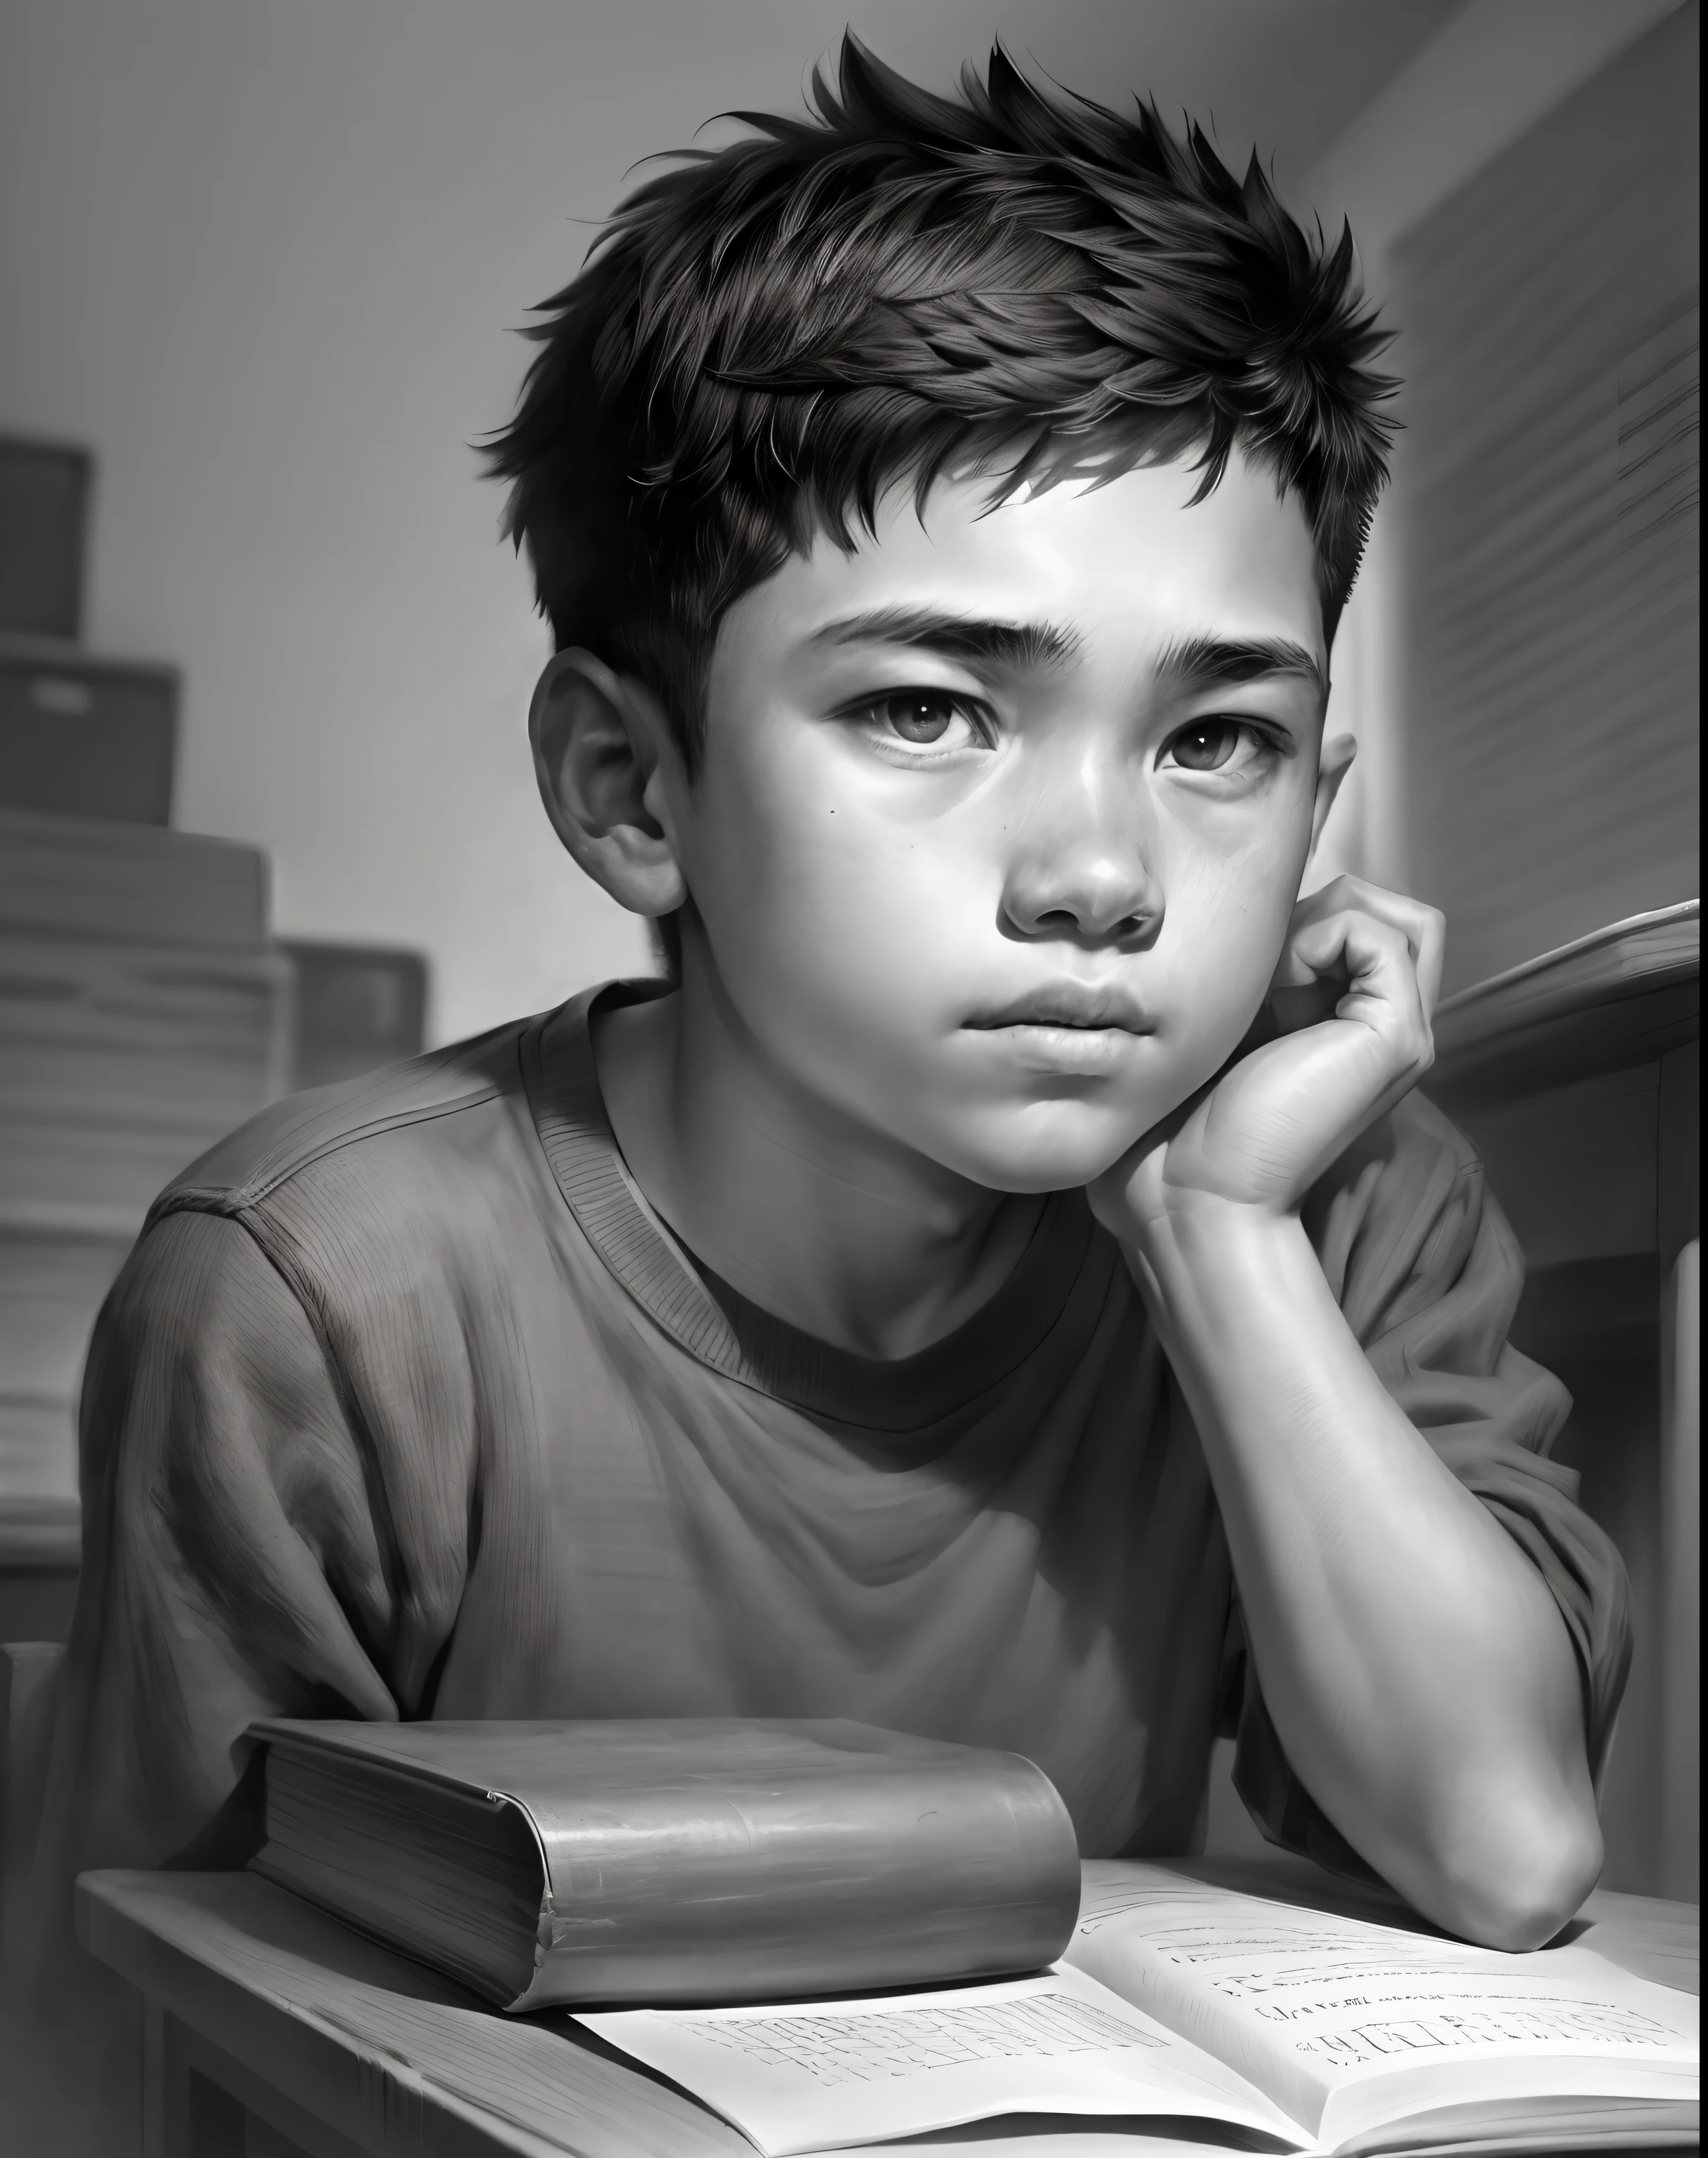 一名15歲男孩在教室裡學習, Retrato em 特写, 木炭肖像, 黑與白, 鉛筆素描. (最好的品質, 高解析度, 超详细), 演播室燈光, 實際的, 鮮豔的色彩, 精细的细节, 戲劇性的燈光, 對比.